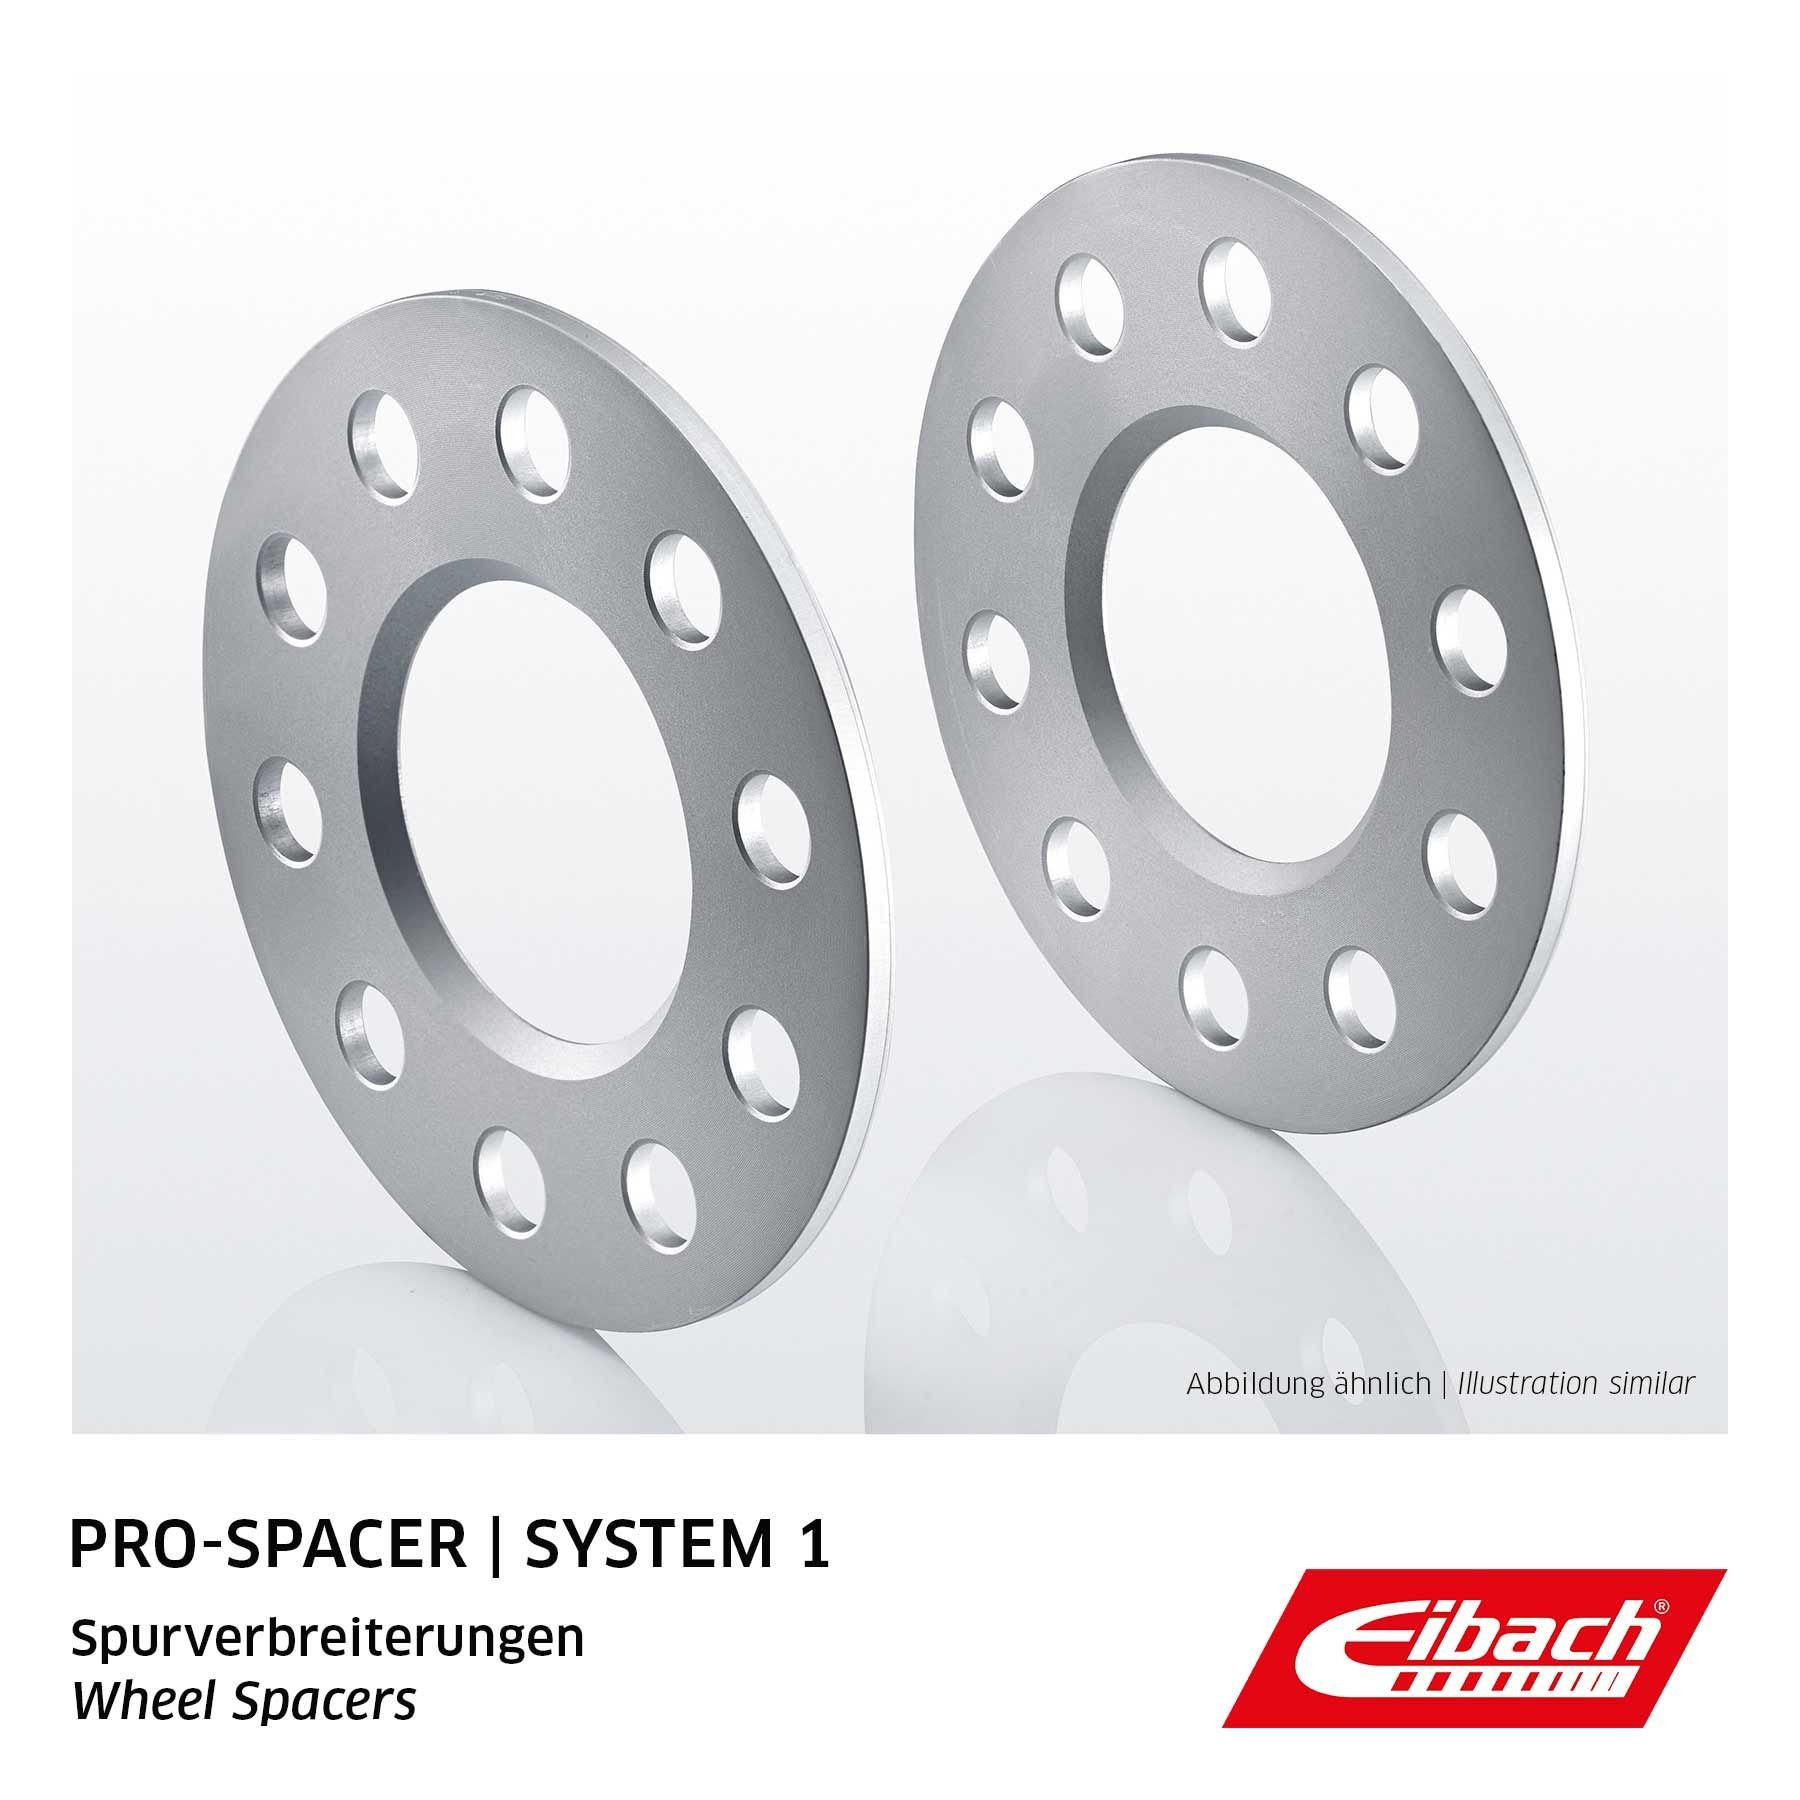 EIBACH 56,5mm, Pro-Spacer S90-1-05-009 Separador de rueda Medida de rosca: M12x1,5, Corona taladros Ø: 100mm